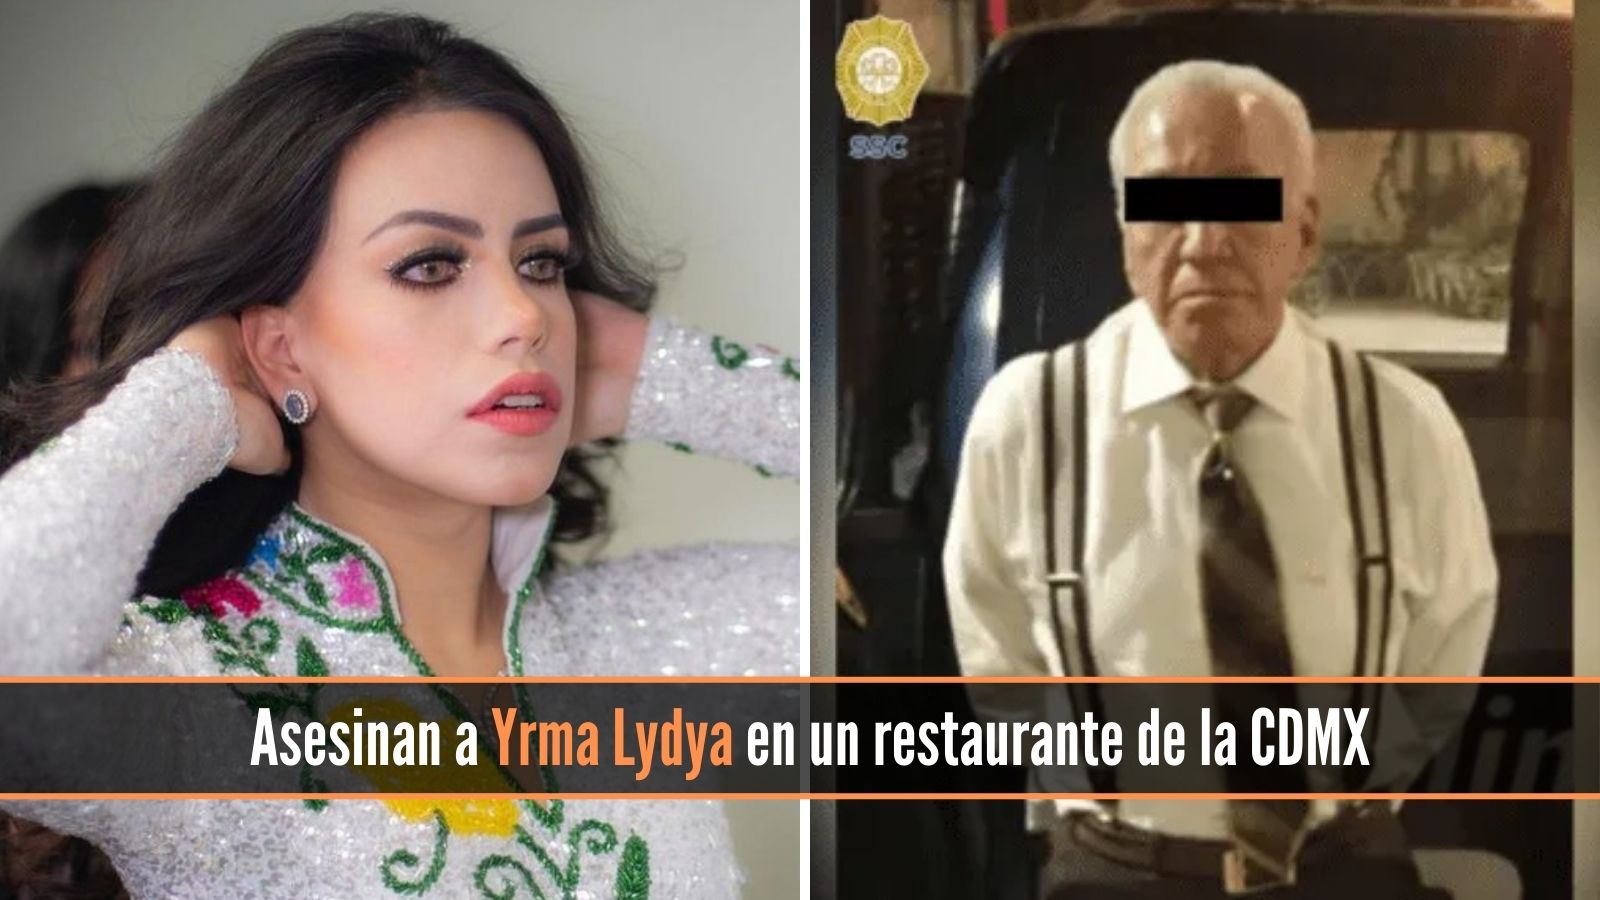 Asesinan a Yrma Lydya en un restaurante de la CDMX